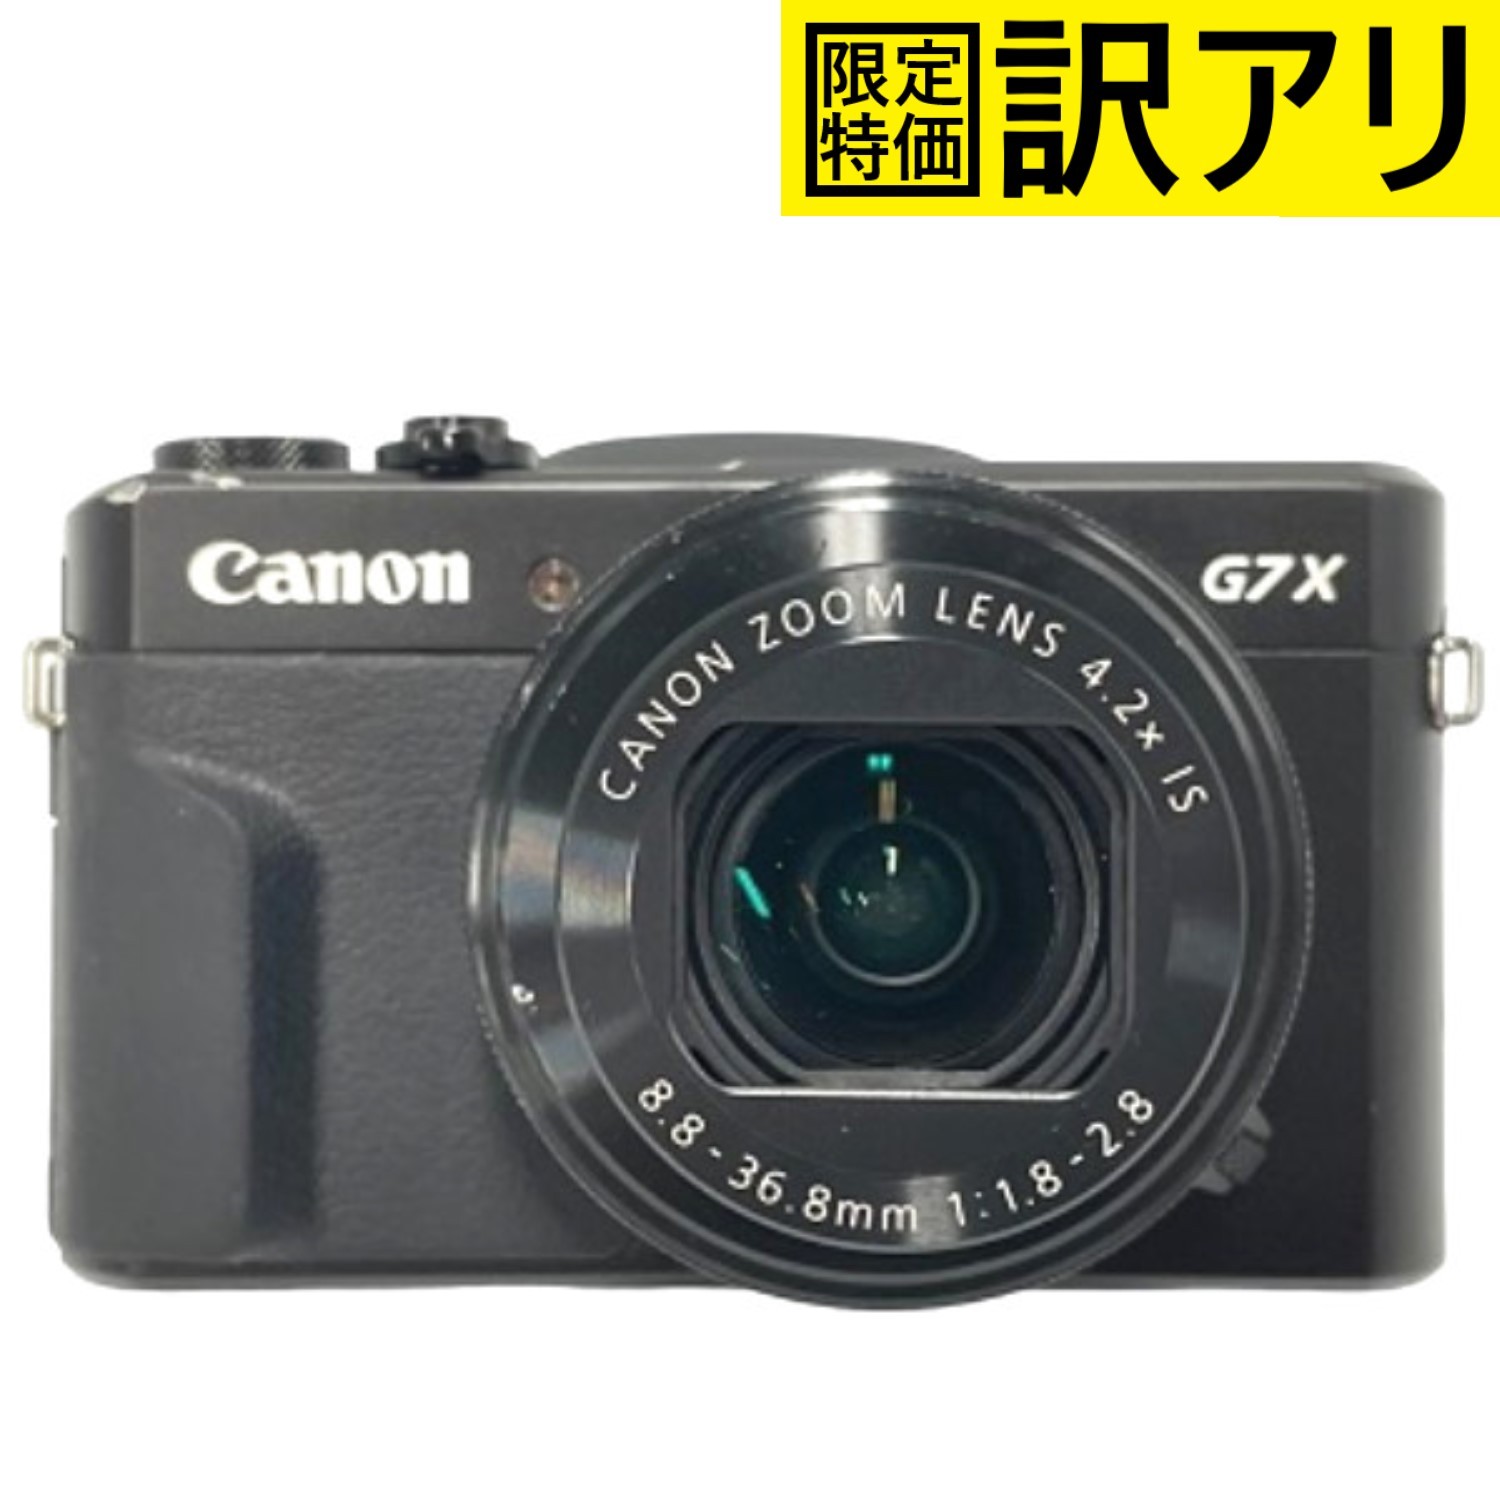 [中古] Canon PowerShot G7 X Mark II コンパクトデジタルカメラ [難あり(D)]